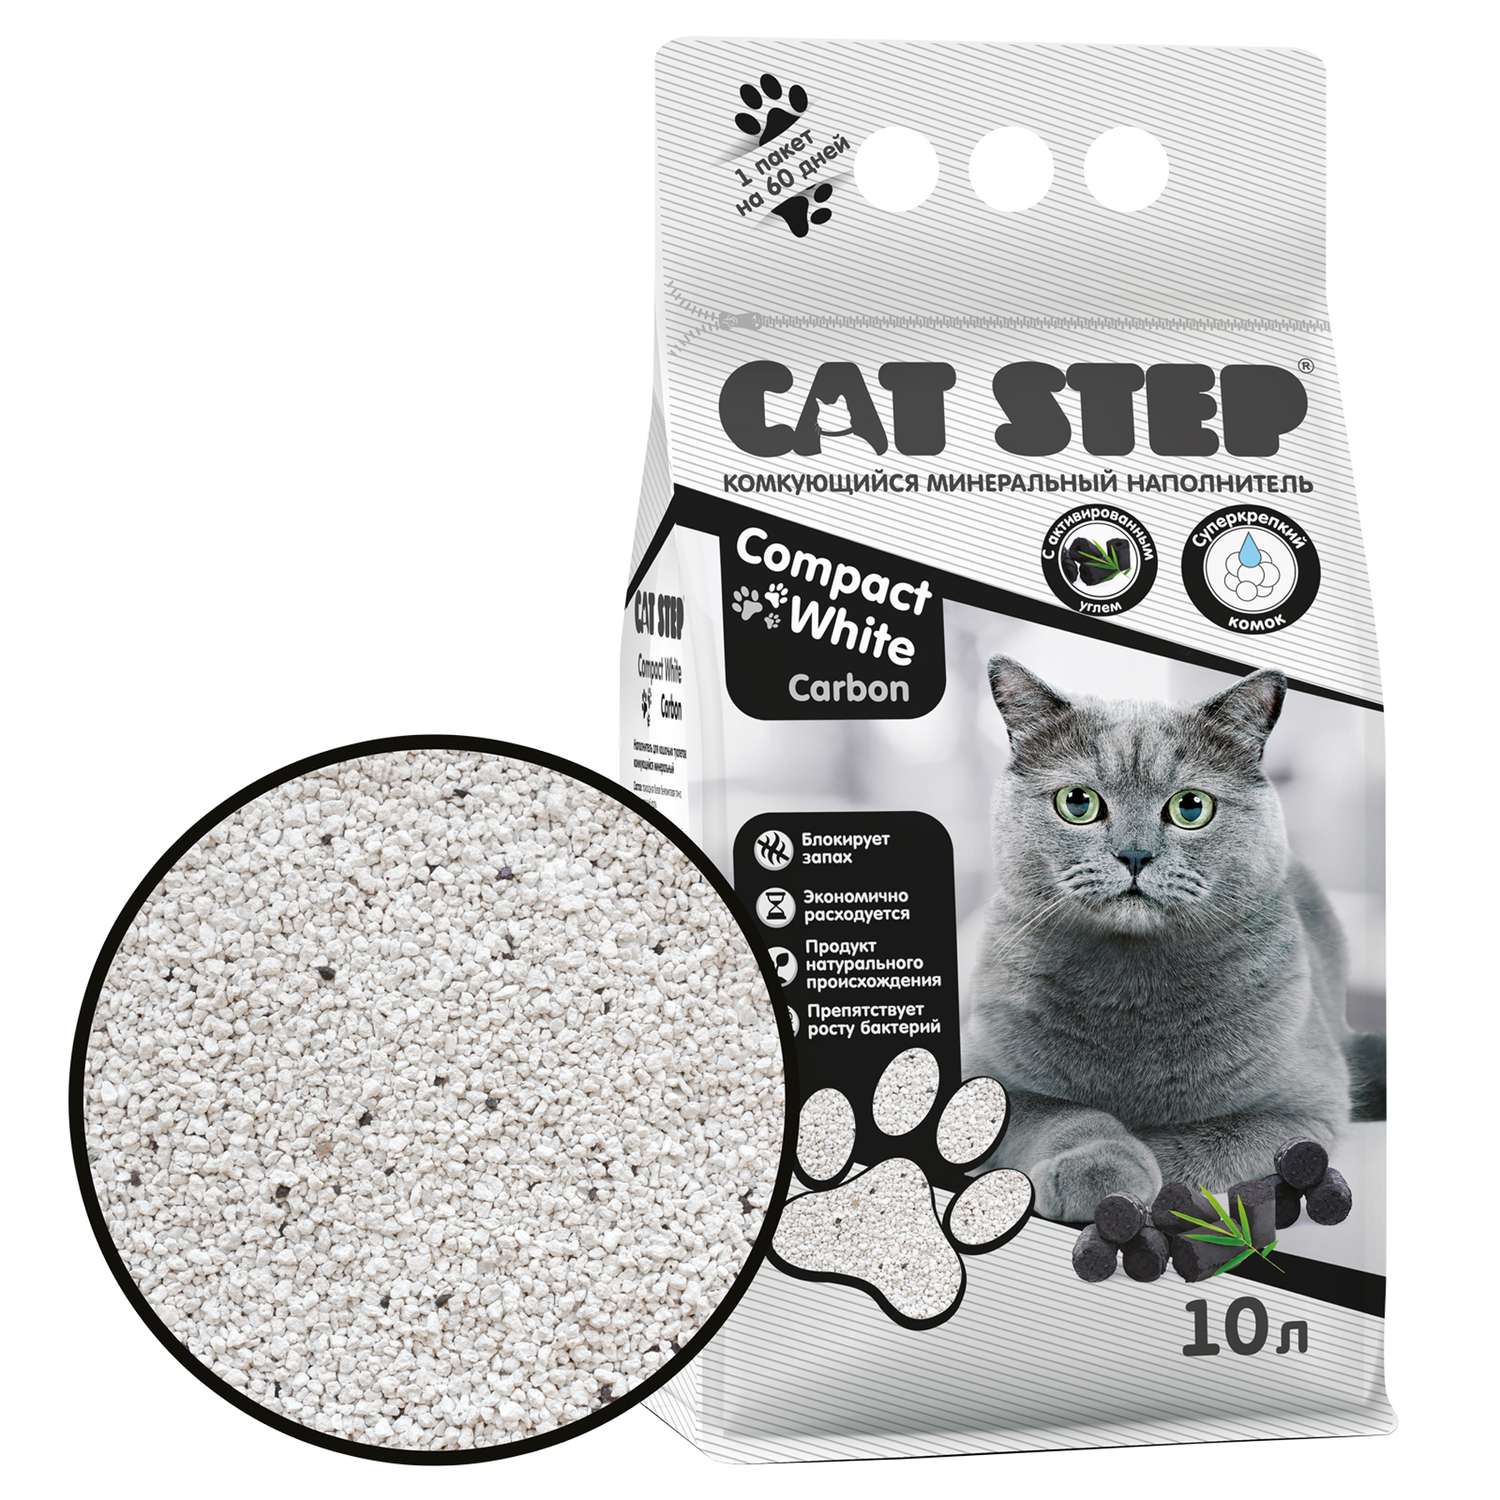 Наполнитель для кошек Cat Step Compact White Carbon комкующийся минеральный 10л - фото 2